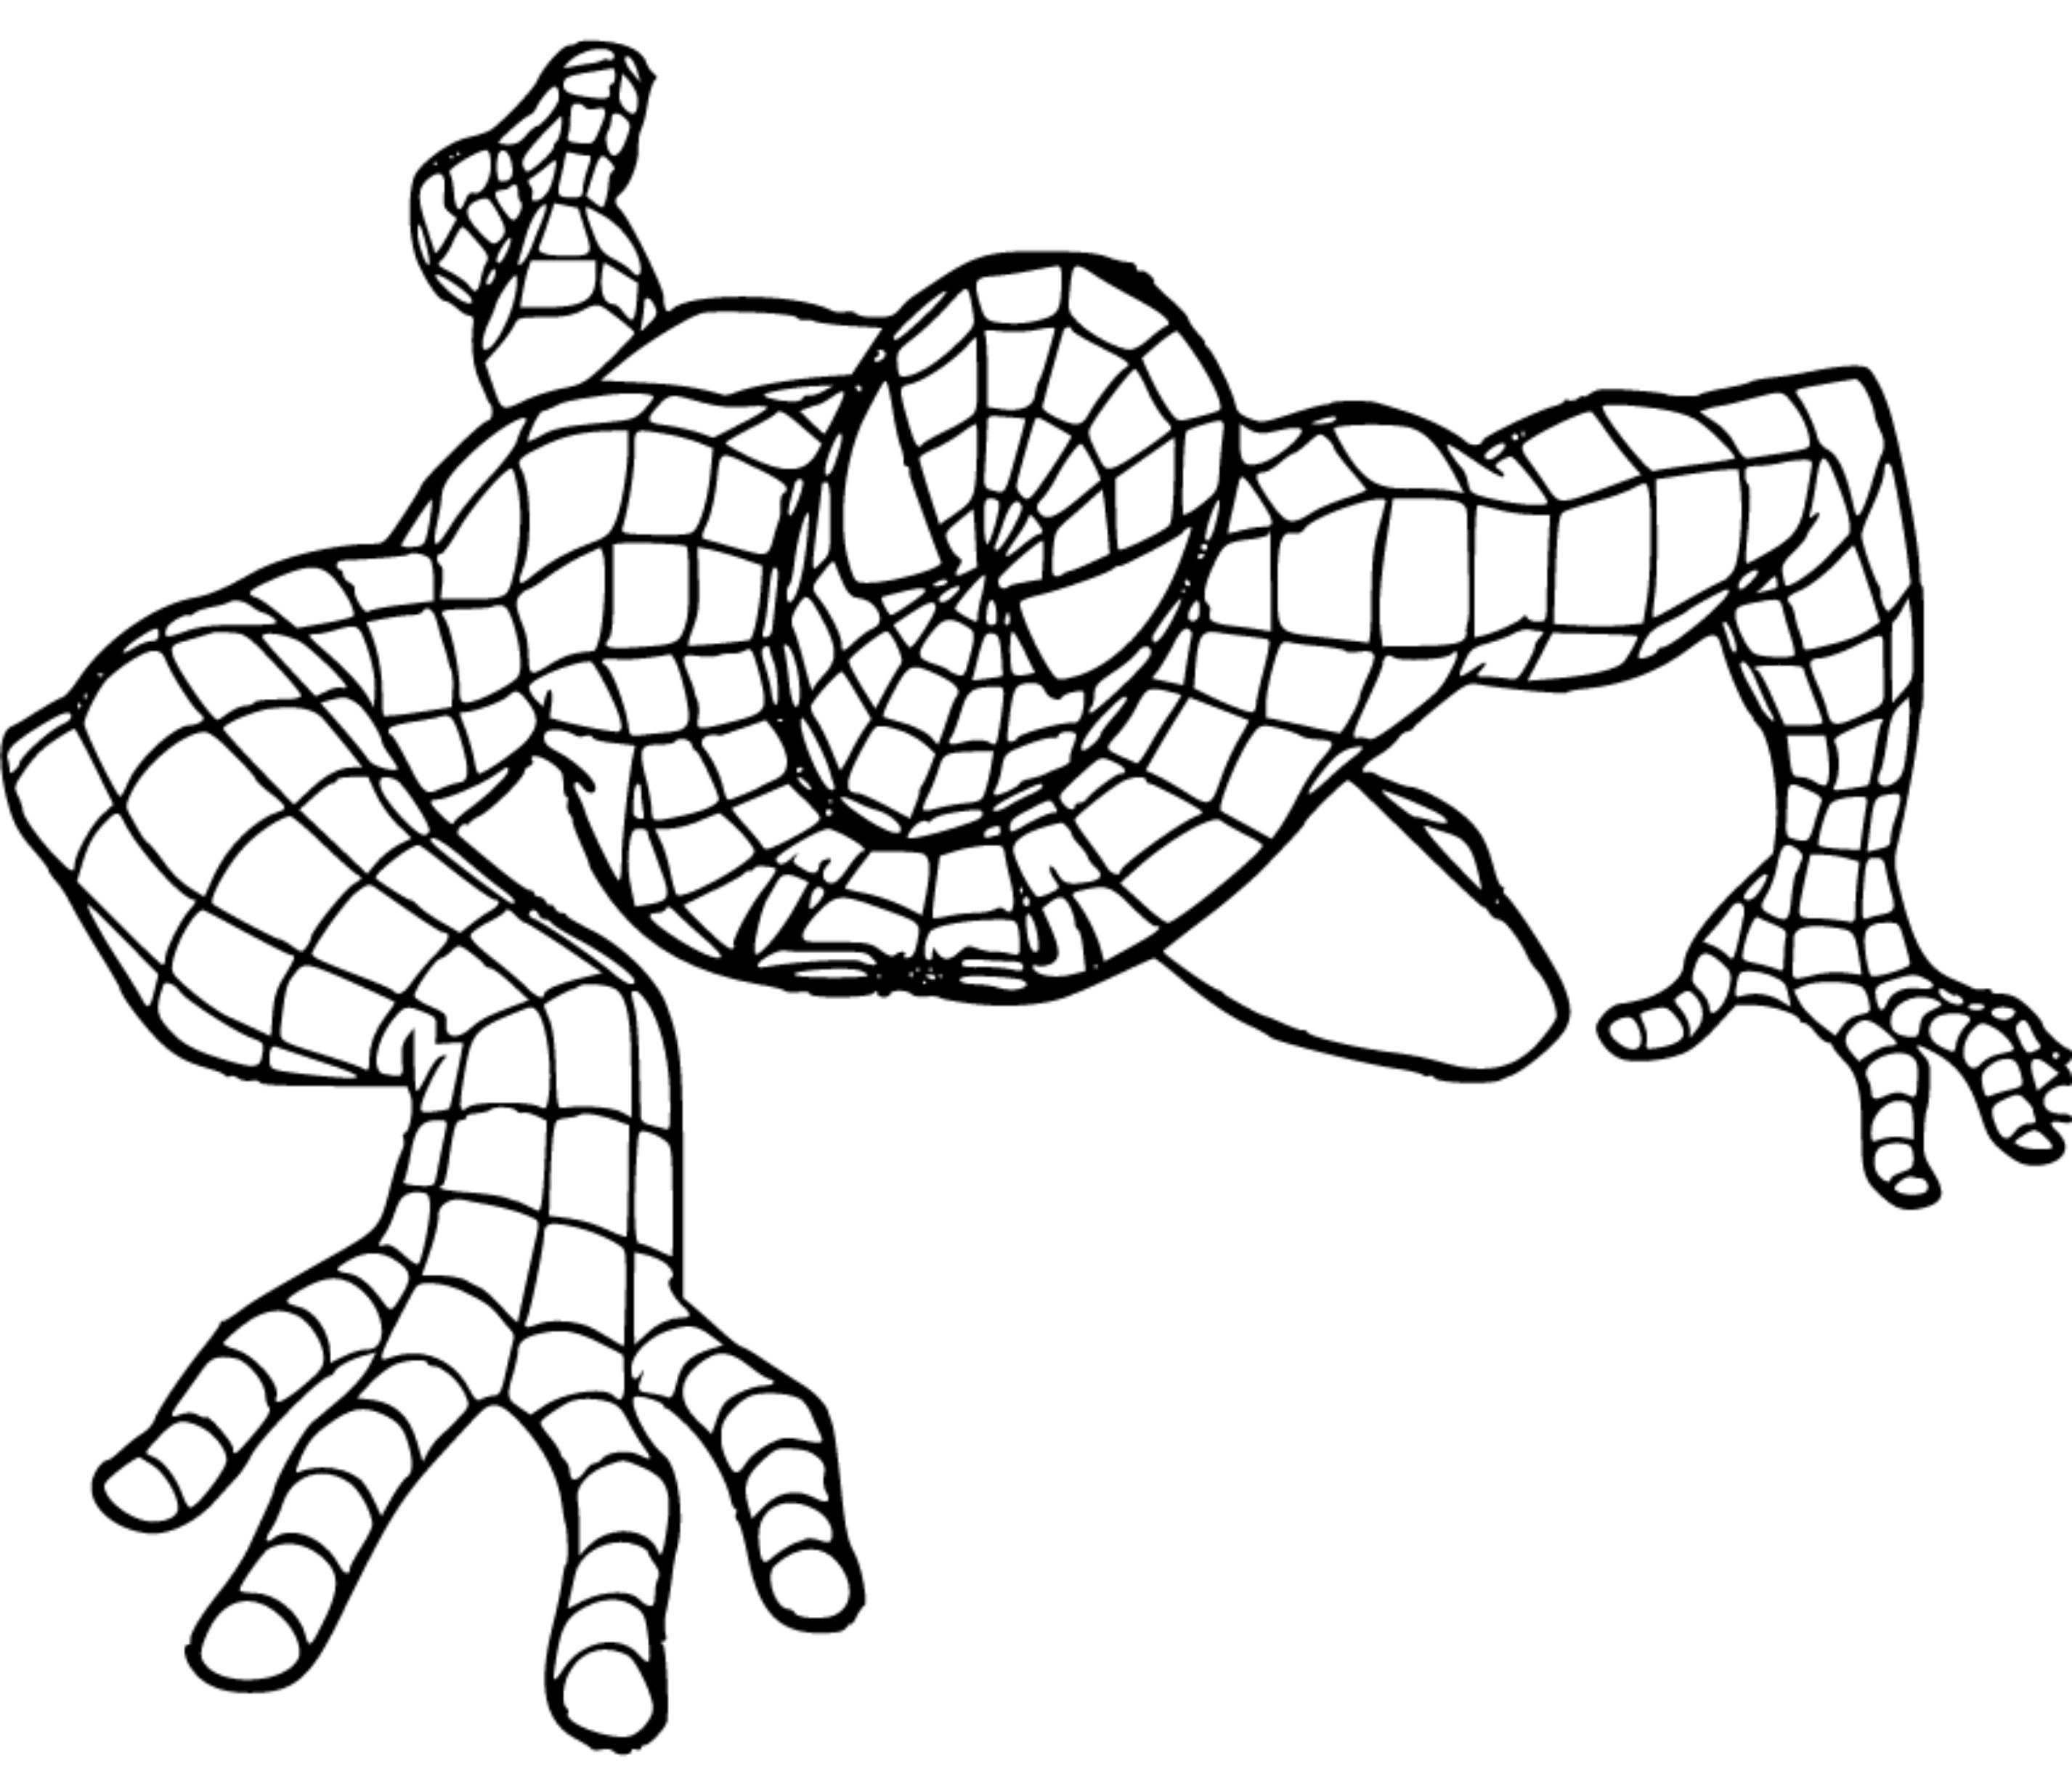 SpiderMan Coloring Page 18 - SheetalColor.com